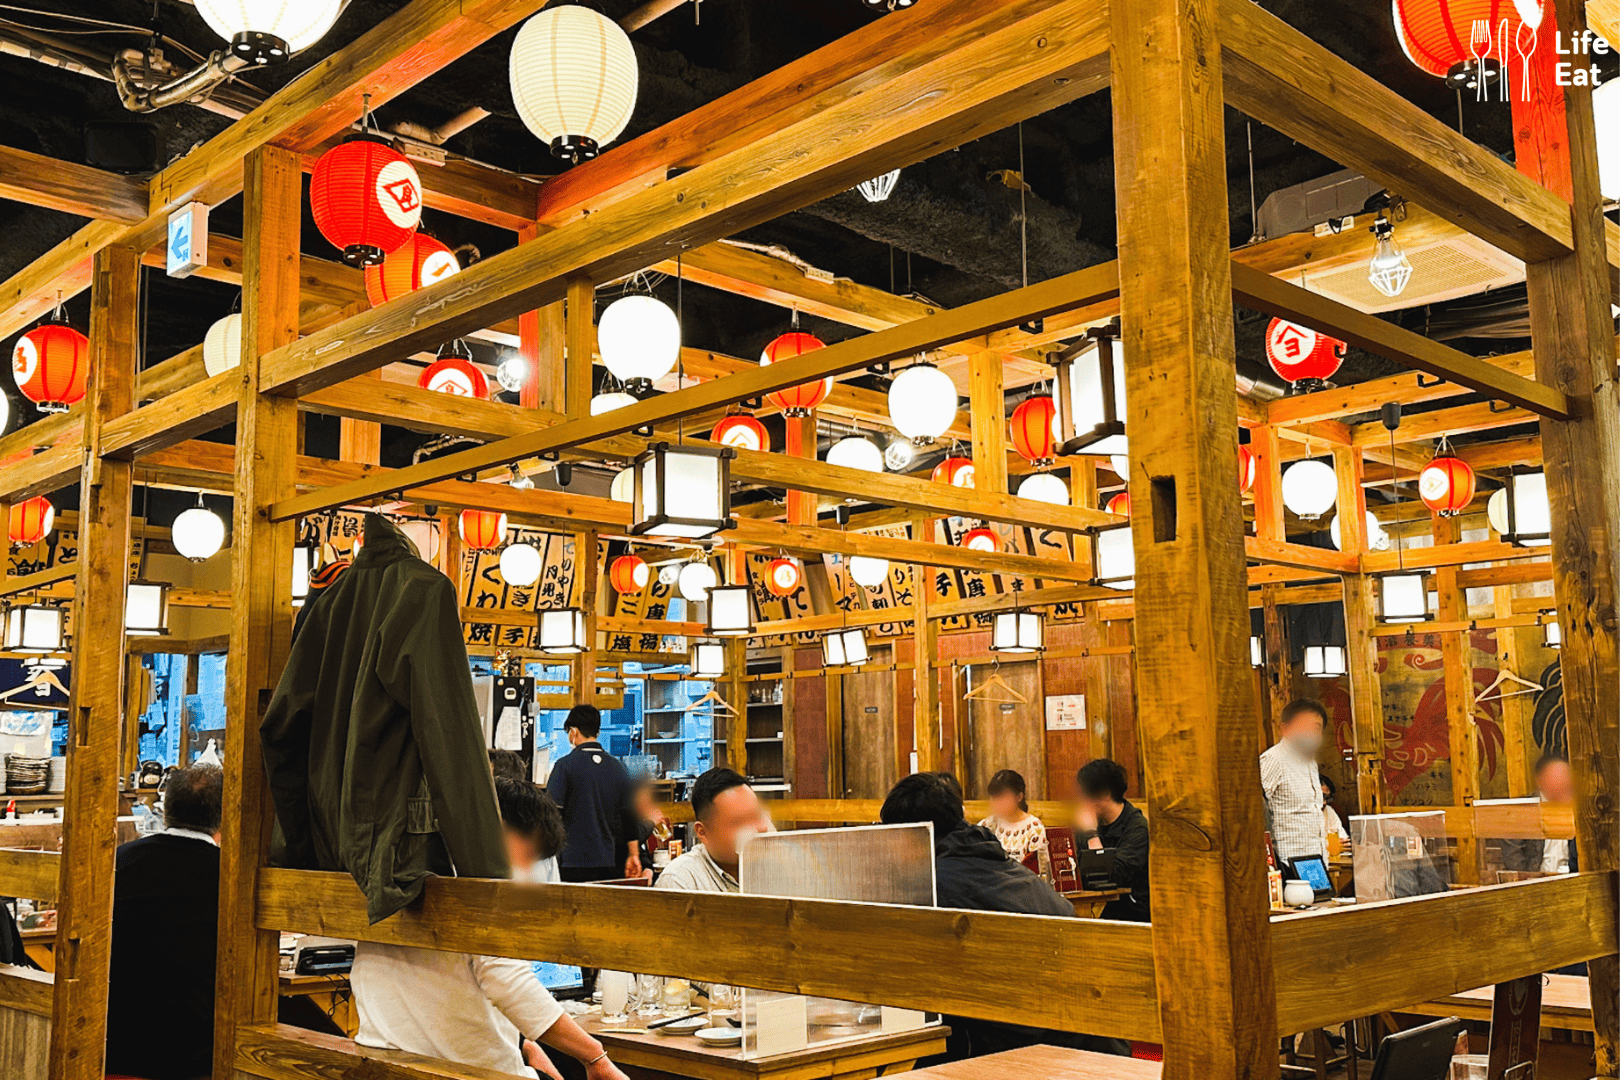 ร้านอาหารในโตเกียว-ร้านอาหารโตเกียว-ร้านอาหารโตเกียว 2023-คาเฟ่โตเกียว-ร้านอาหาร ที่ญี่ปุ่น-คาเฟ่โตเกียว 2023-โตเกียว อาหาร-ร้านอาหาร โตเกียว-ร้านอร่อยโตเกียว-ร้านดังโตเกียว-เที่ยวโตเกียว-ร้านโตเกียว-เที่ยวโตเกียวด้วยตัวเอง